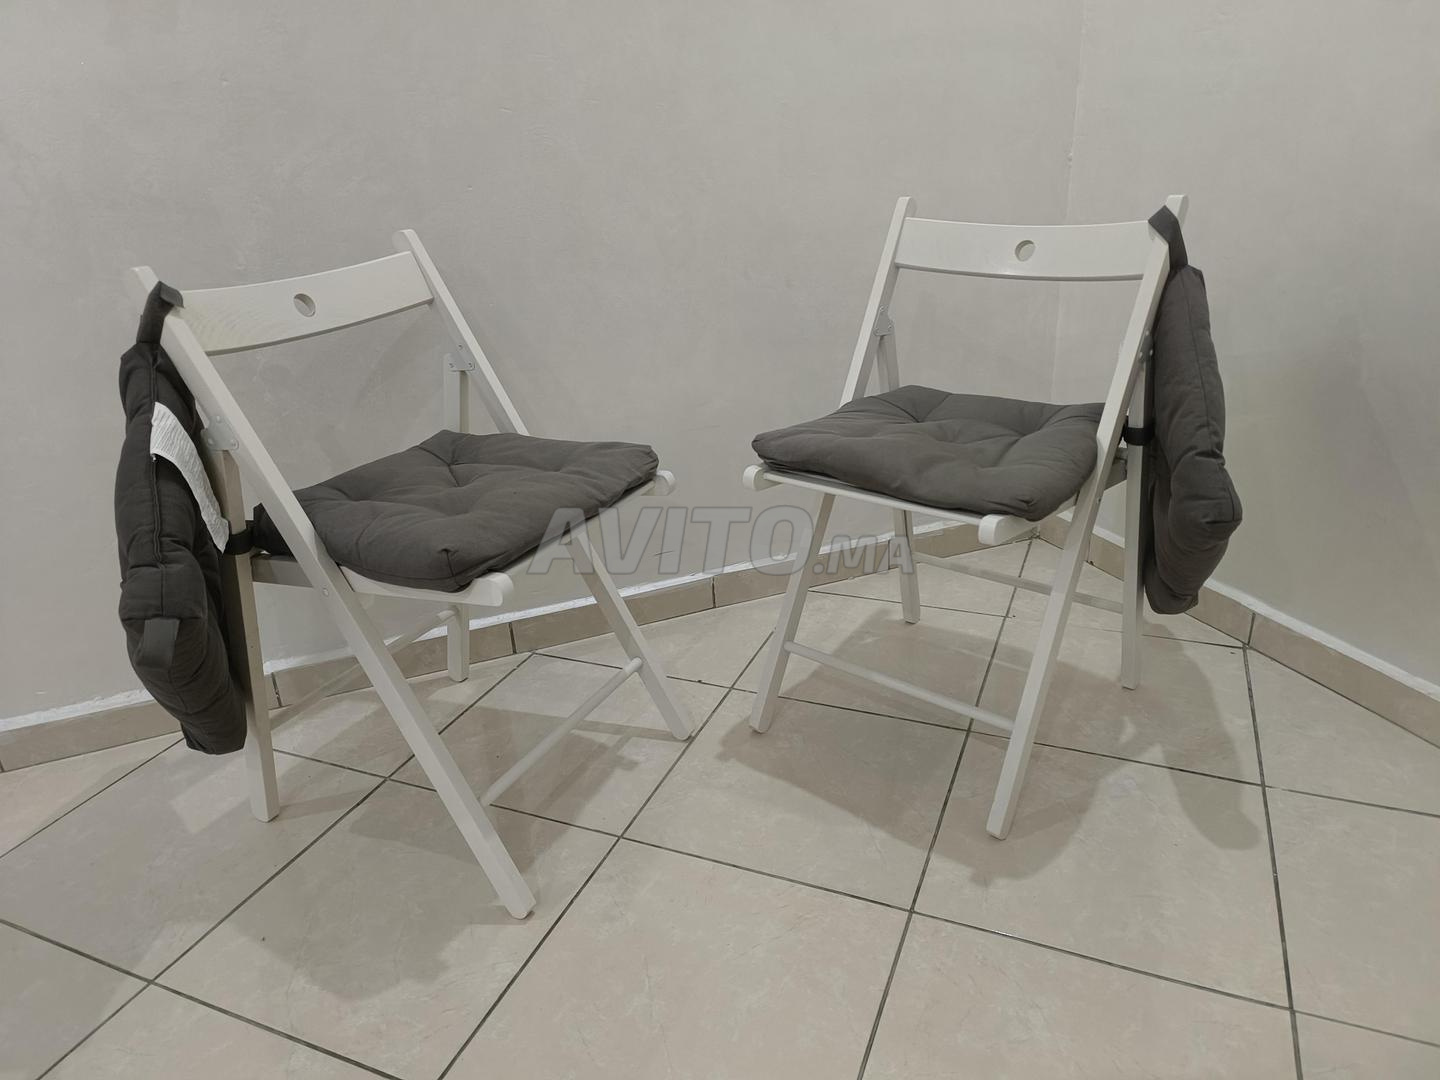 MALINDA Coussin de chaise, gris, 40/35x38x7 cm - IKEA